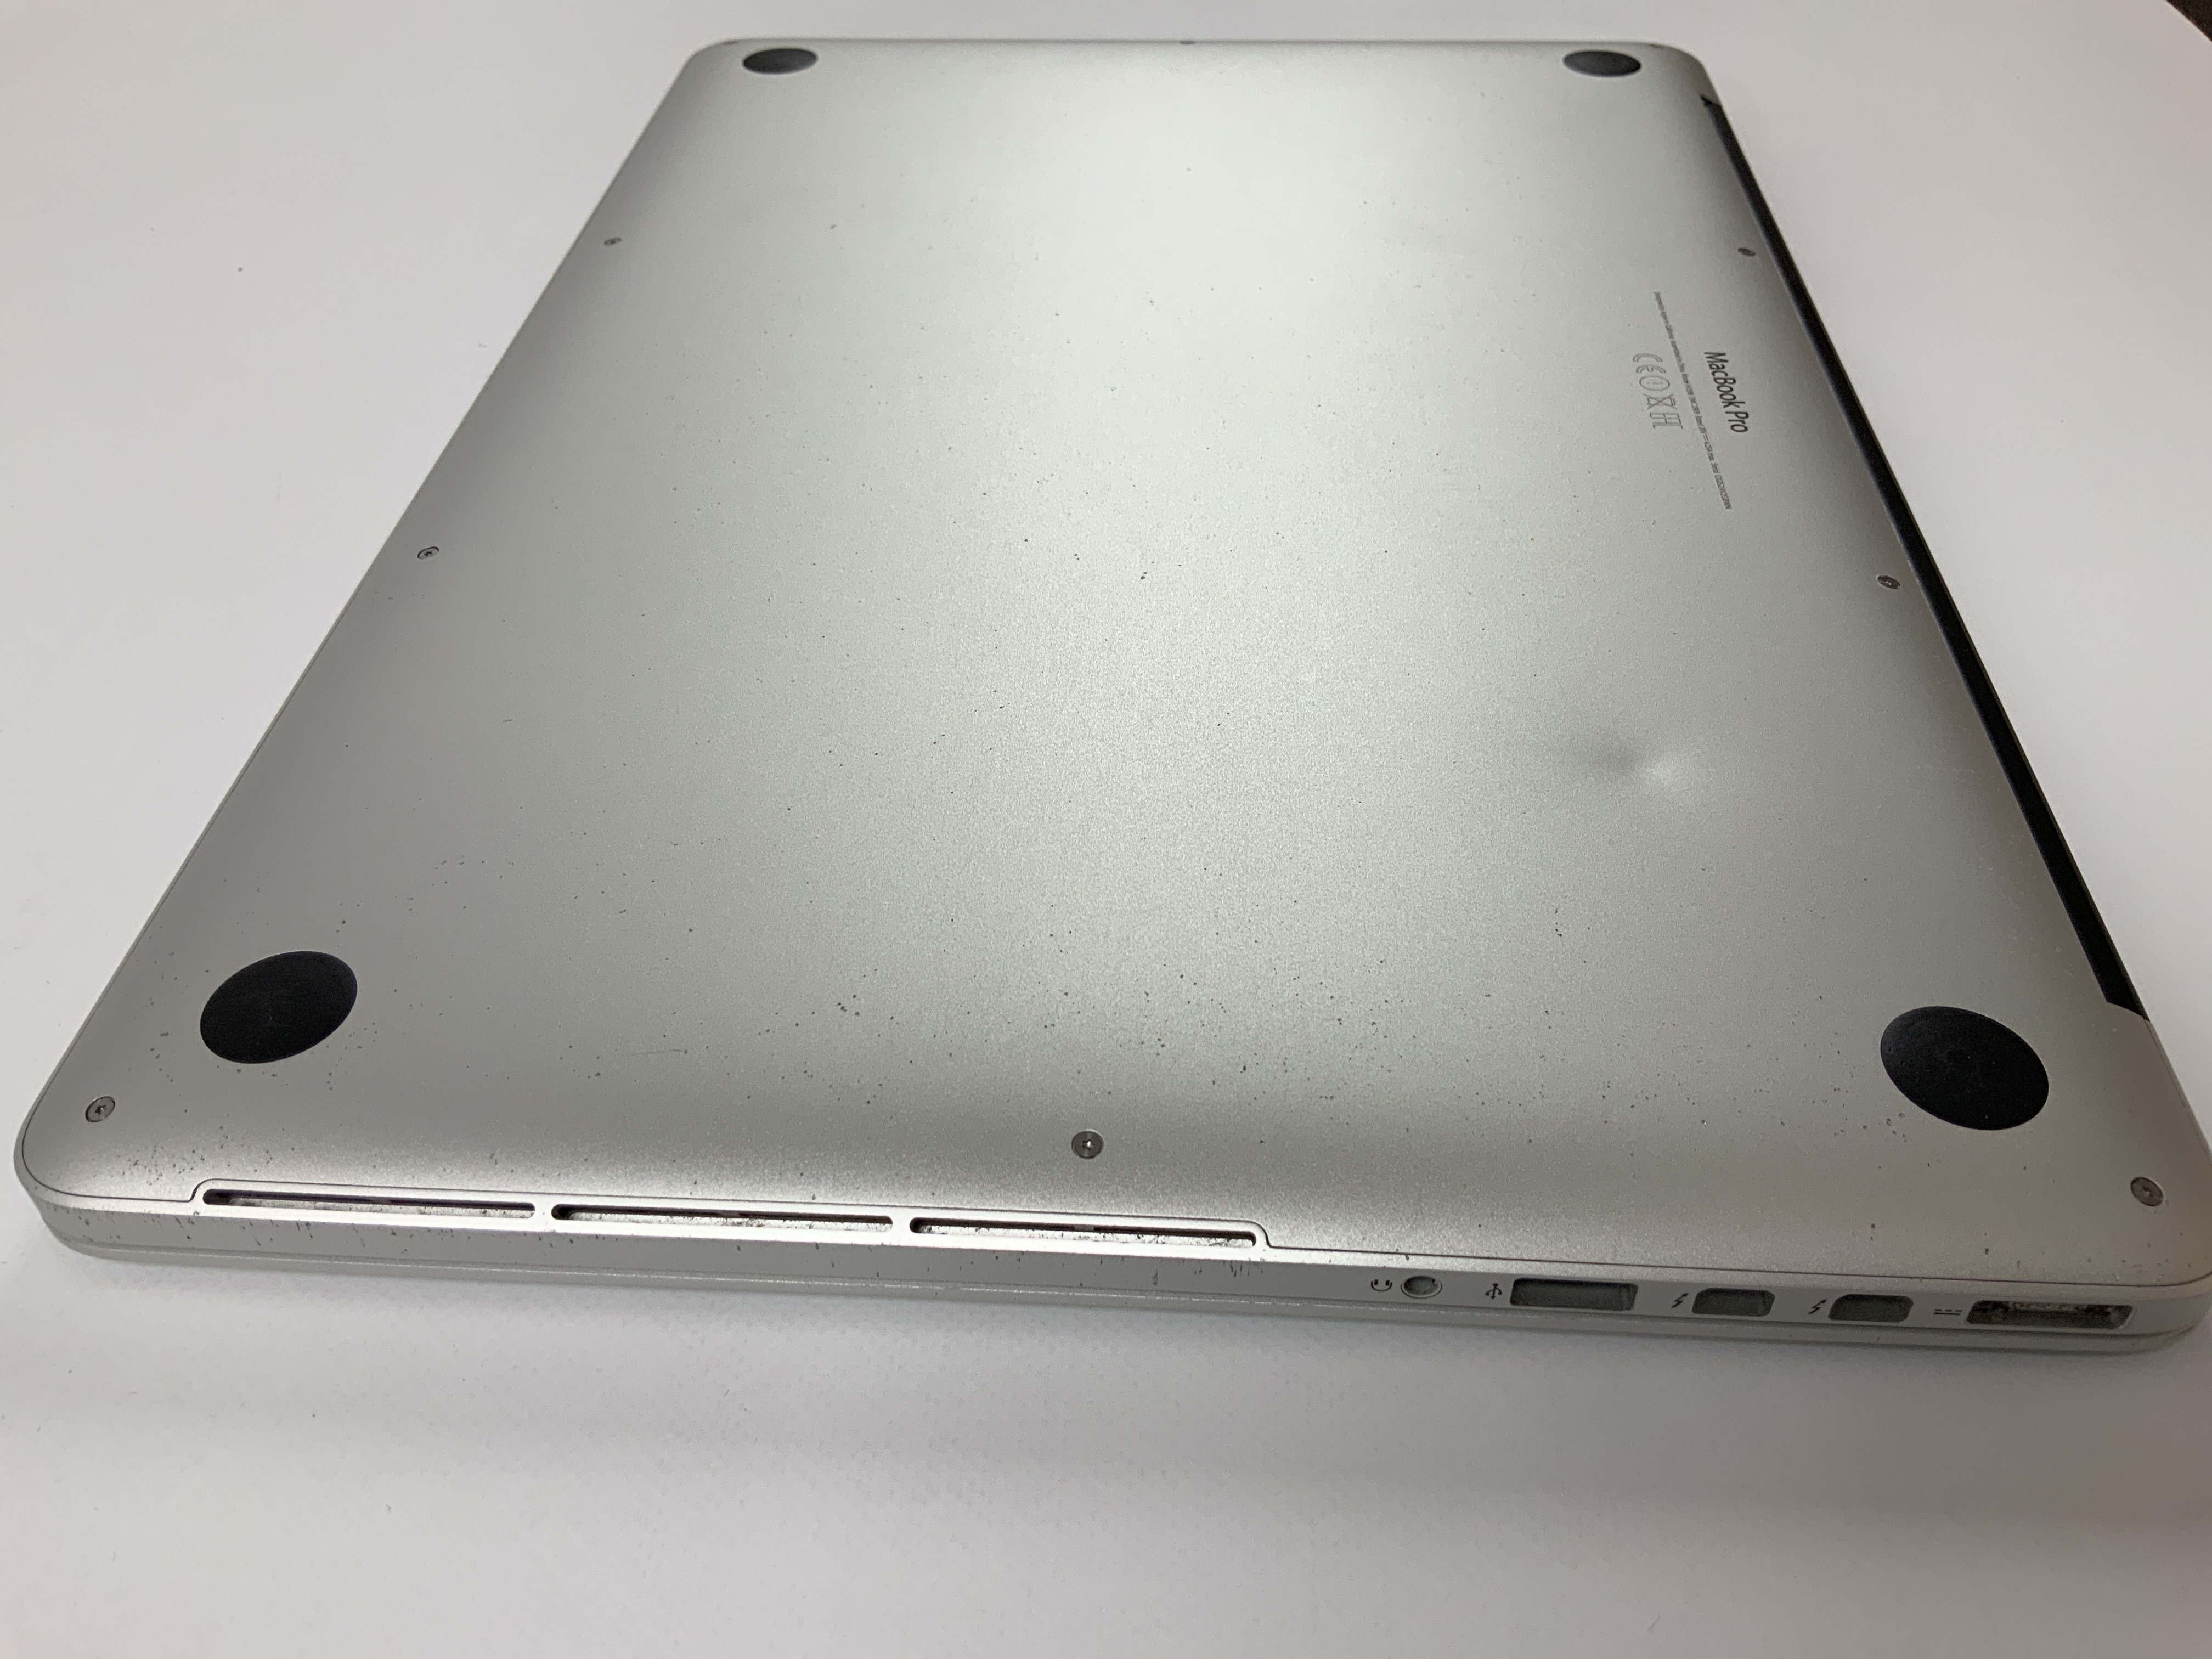 MacBook Pro Retina 15" Mid 2015 (Intel Quad-Core i7 2.5 GHz 16 GB RAM 256 GB SSD), Intel Quad-Core i7 2.5 GHz, 16 GB RAM, 256 GB SSD, Afbeelding 5